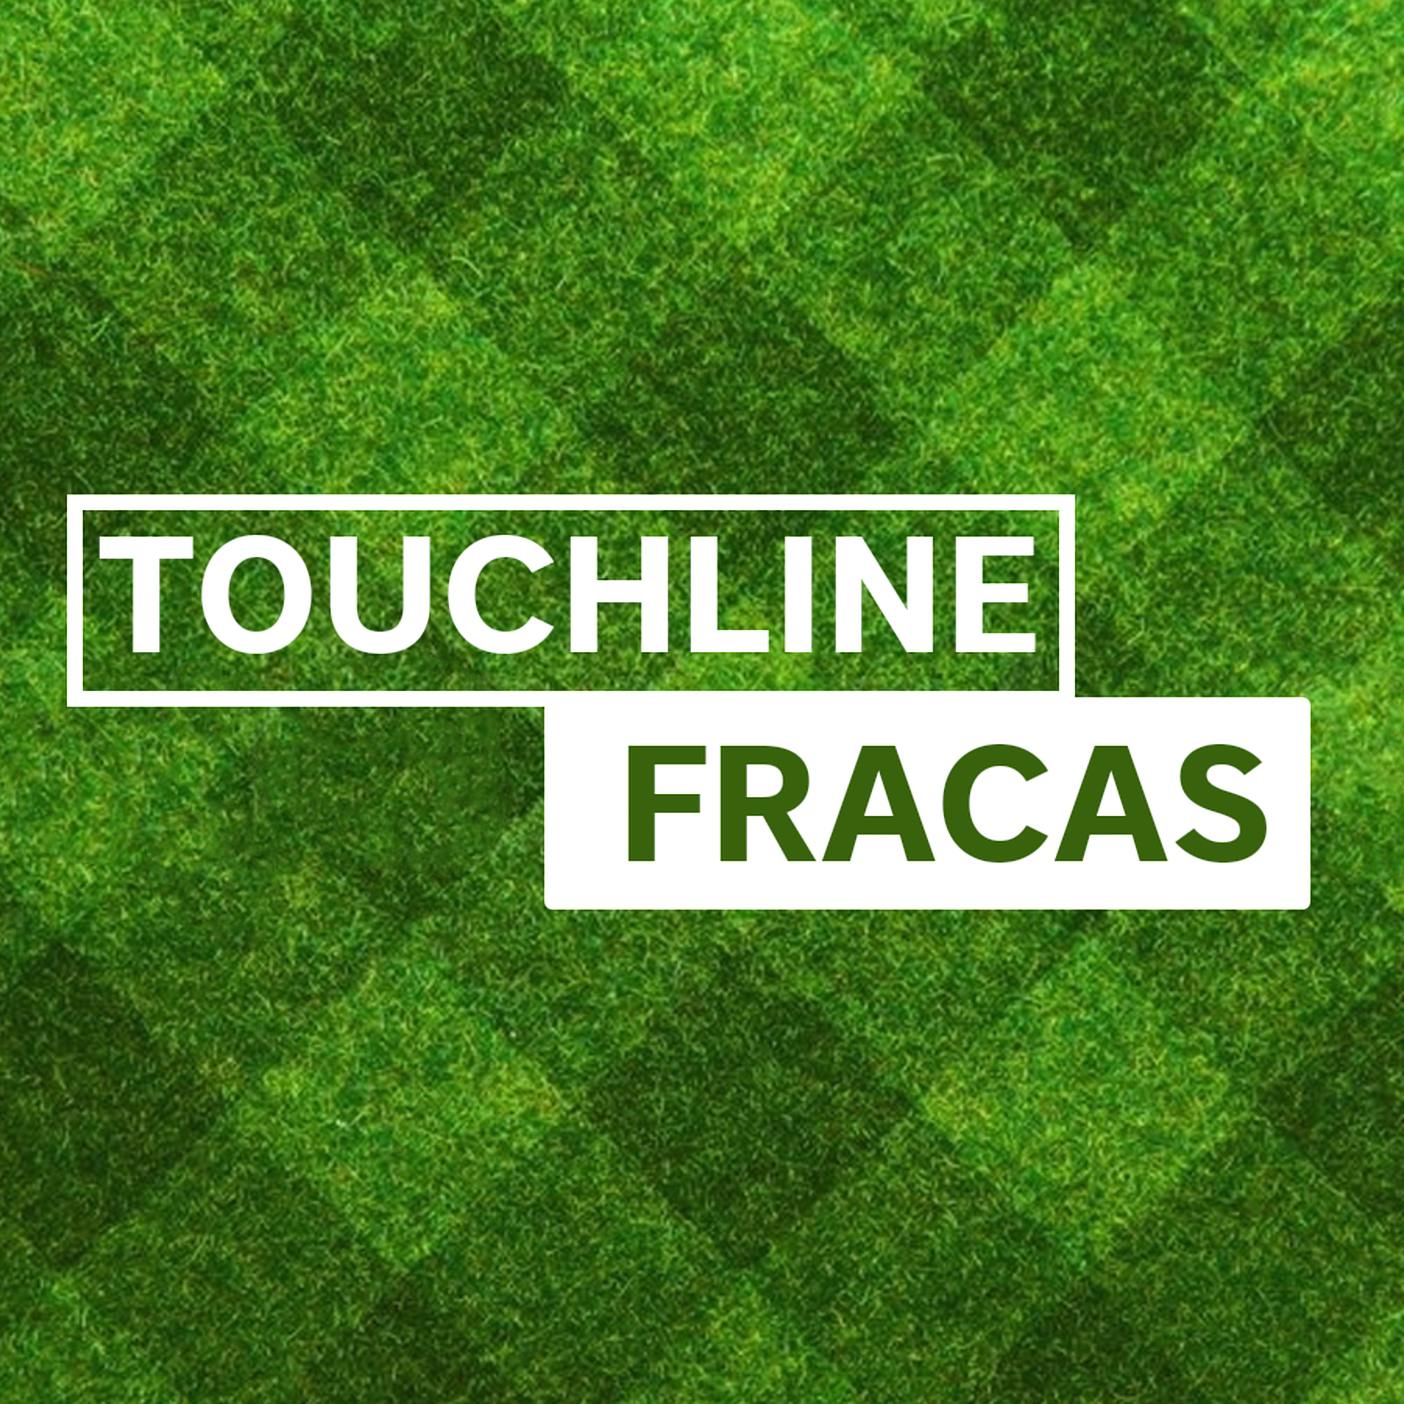 Touchline Fracas - 21 in 45